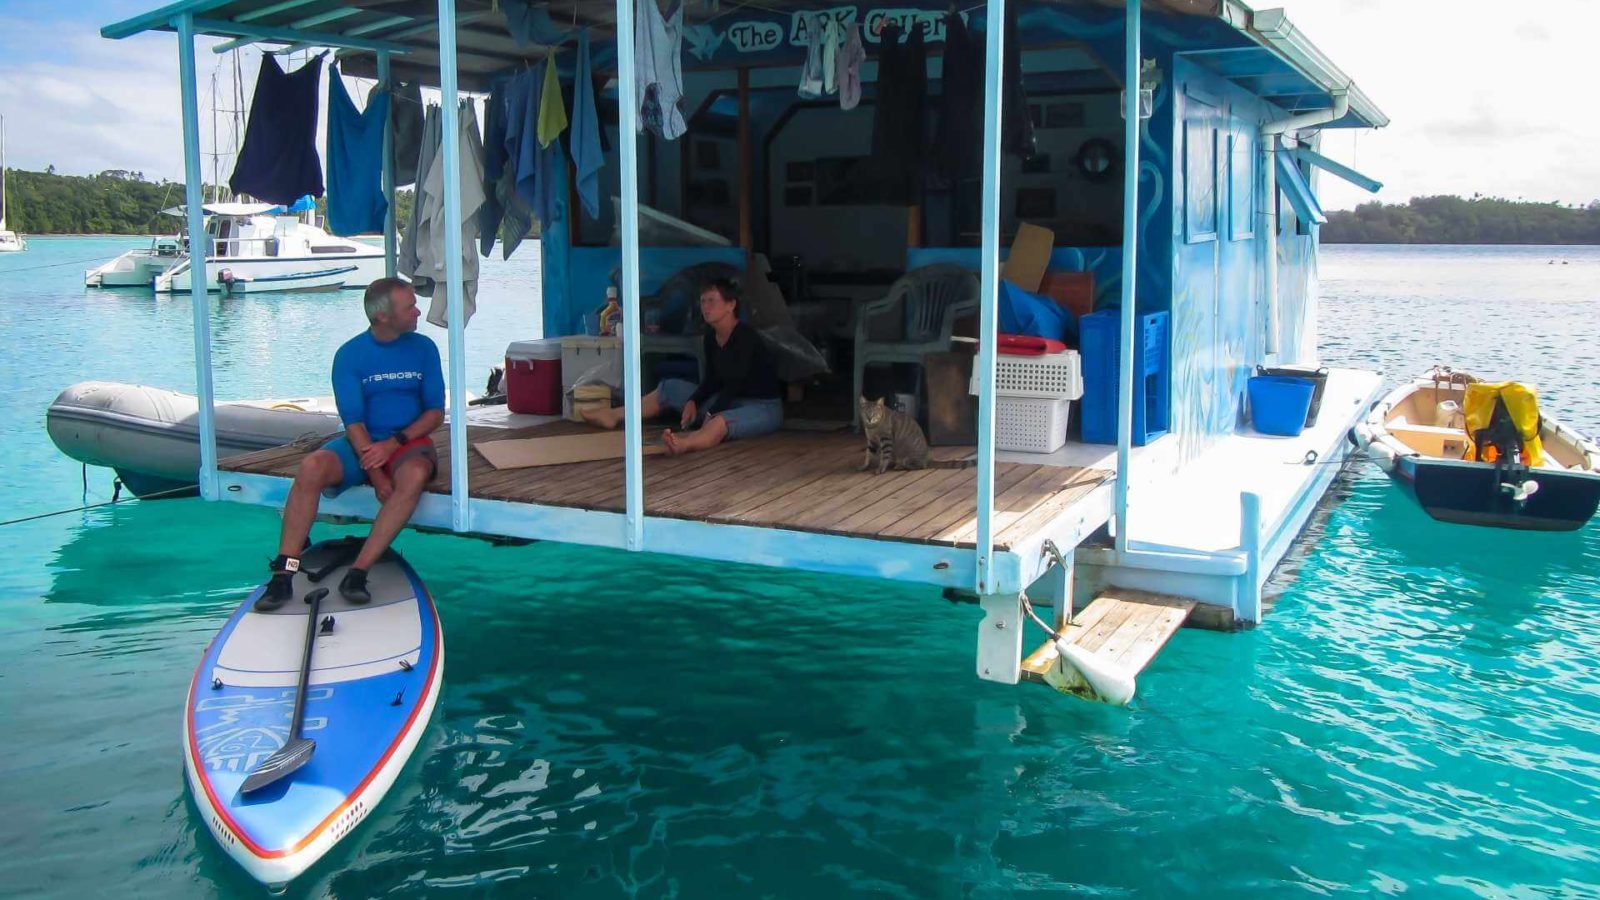 Floating Ark Gallery, Vava'u, Tonga